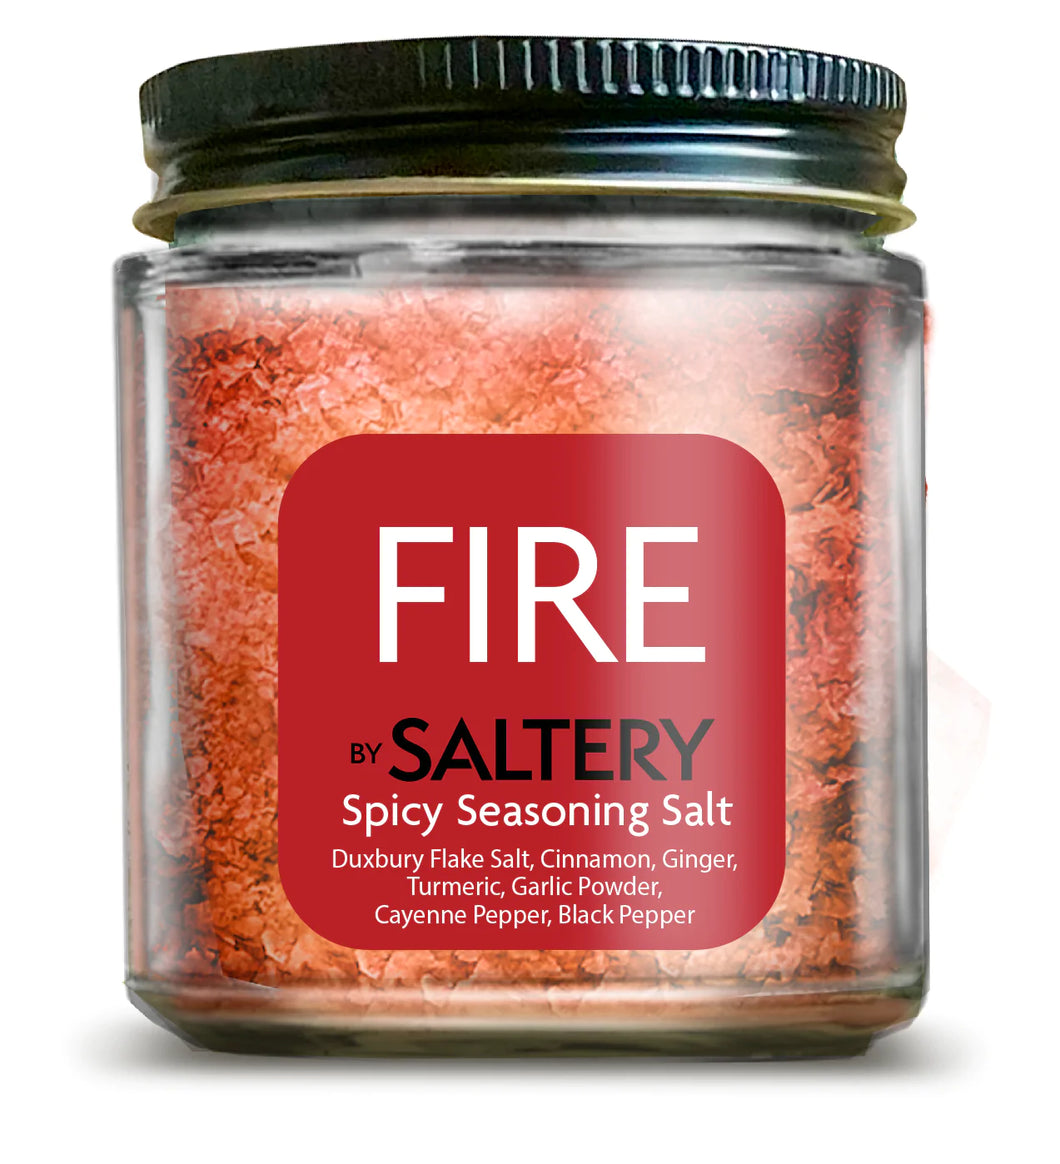 Saltery Fire